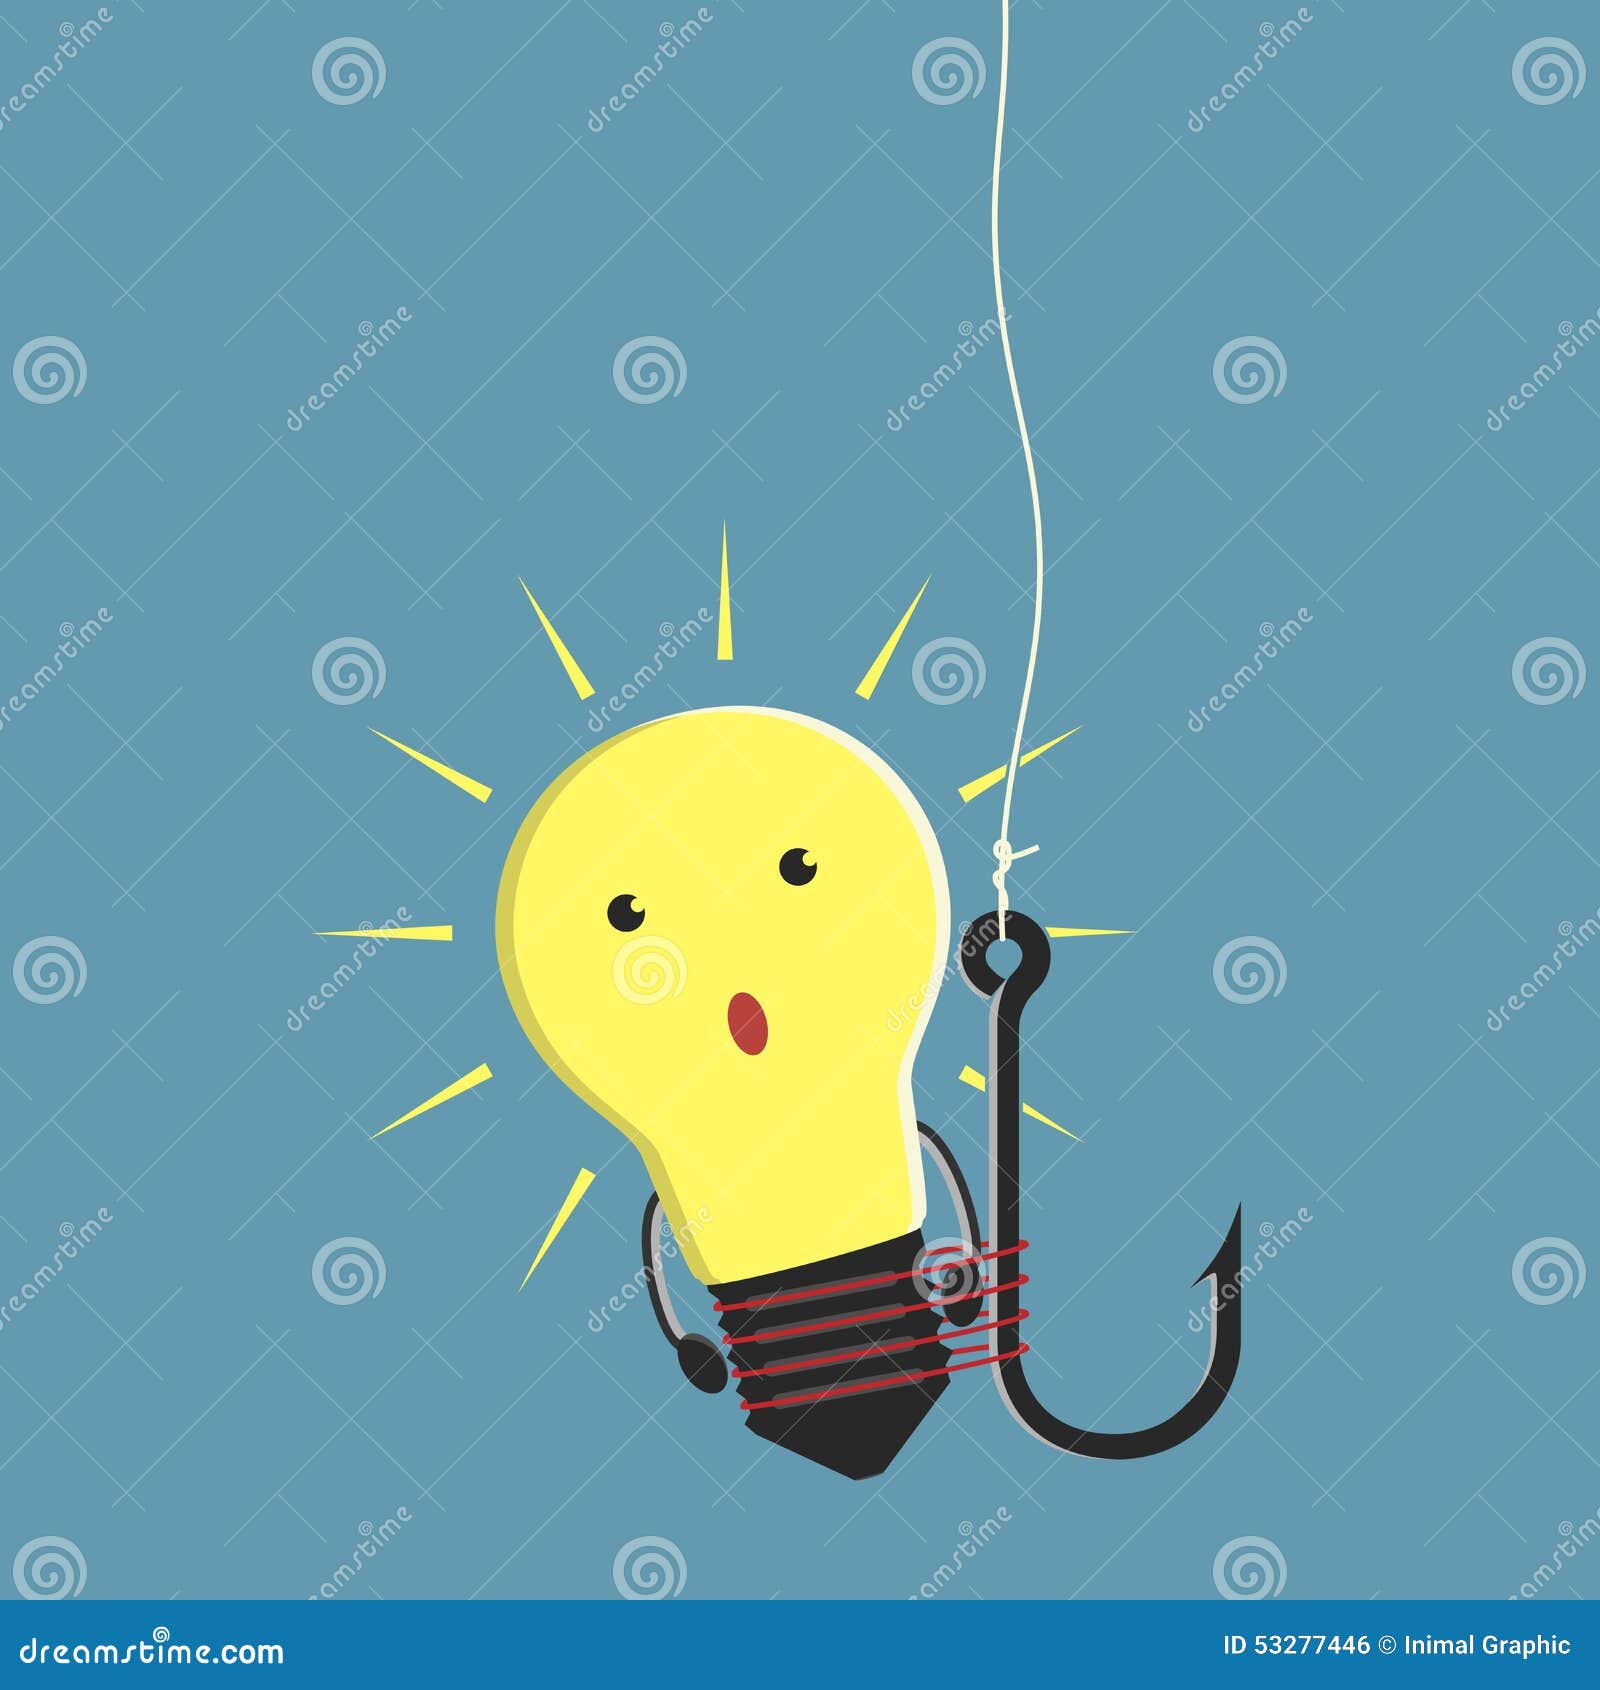 Lightbulb Character on Fishhook Stock Vector - Illustration of